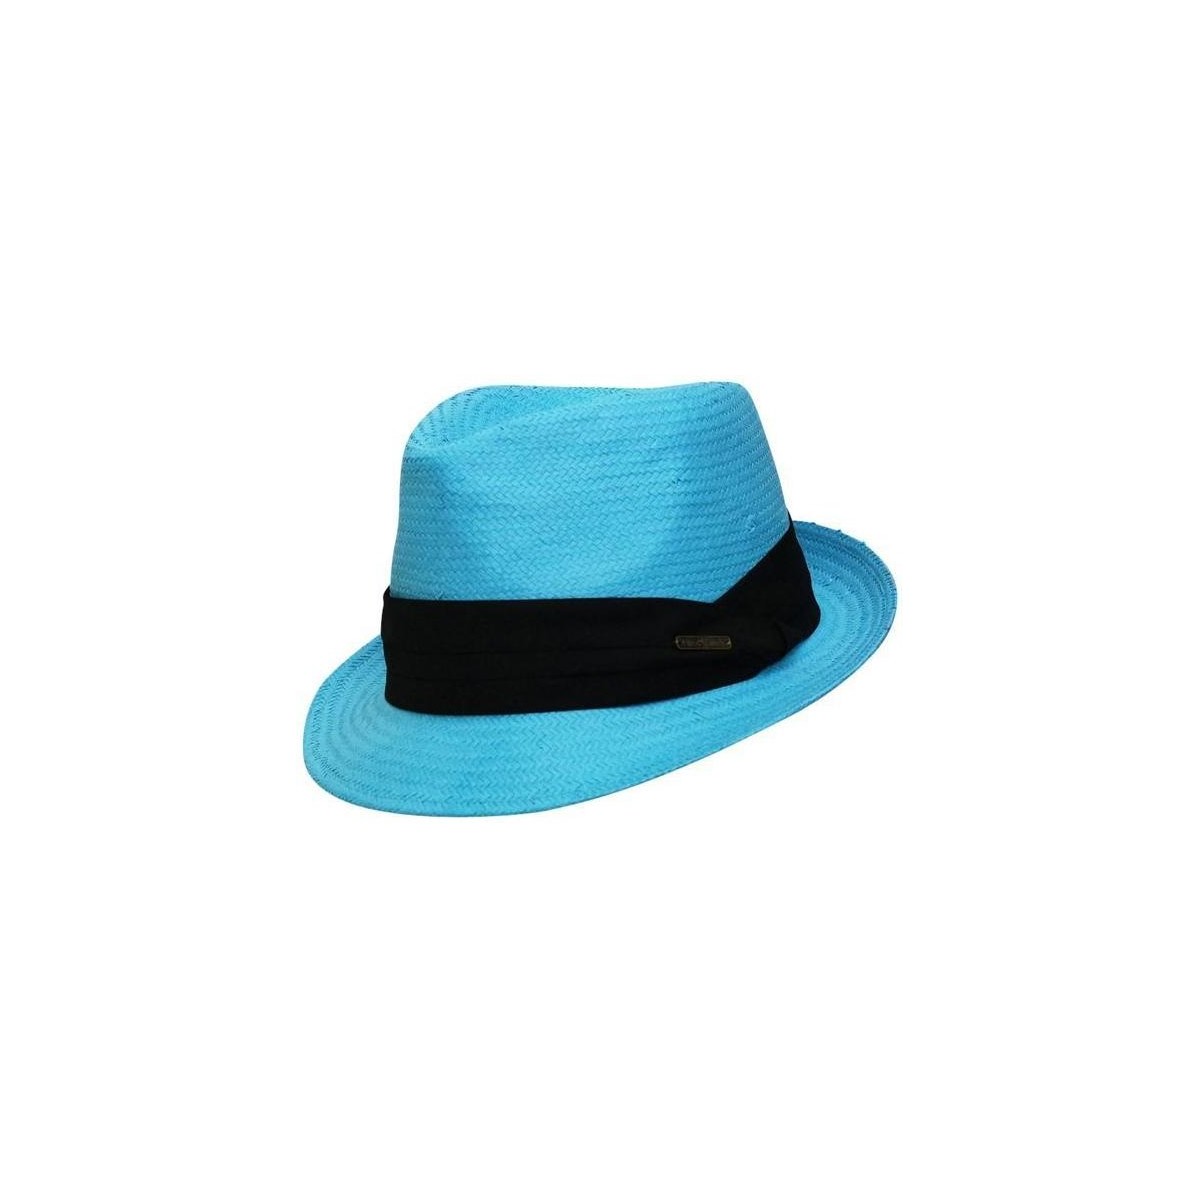 Accessoires textile Chapeaux Chapeau-Tendance Trilby style panama Bleu